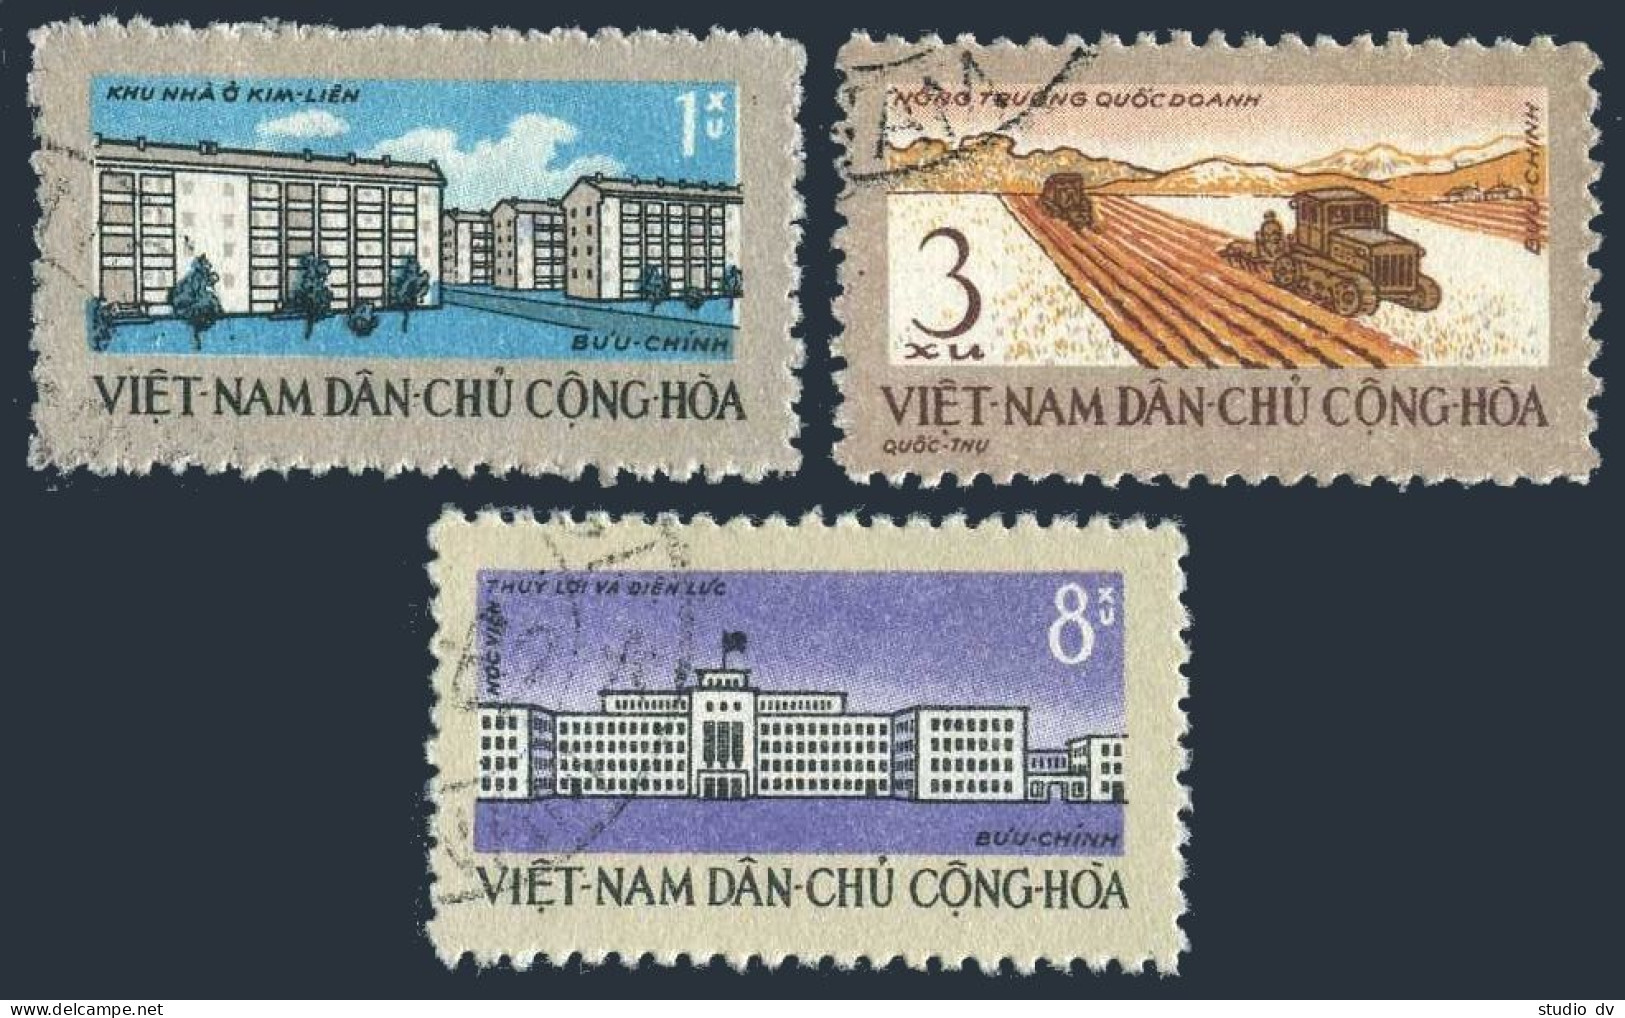 Viet Nam 200-202,CTO.Michel 211-213. Five Year Plan,1962.Farm,Institute. - Vietnam